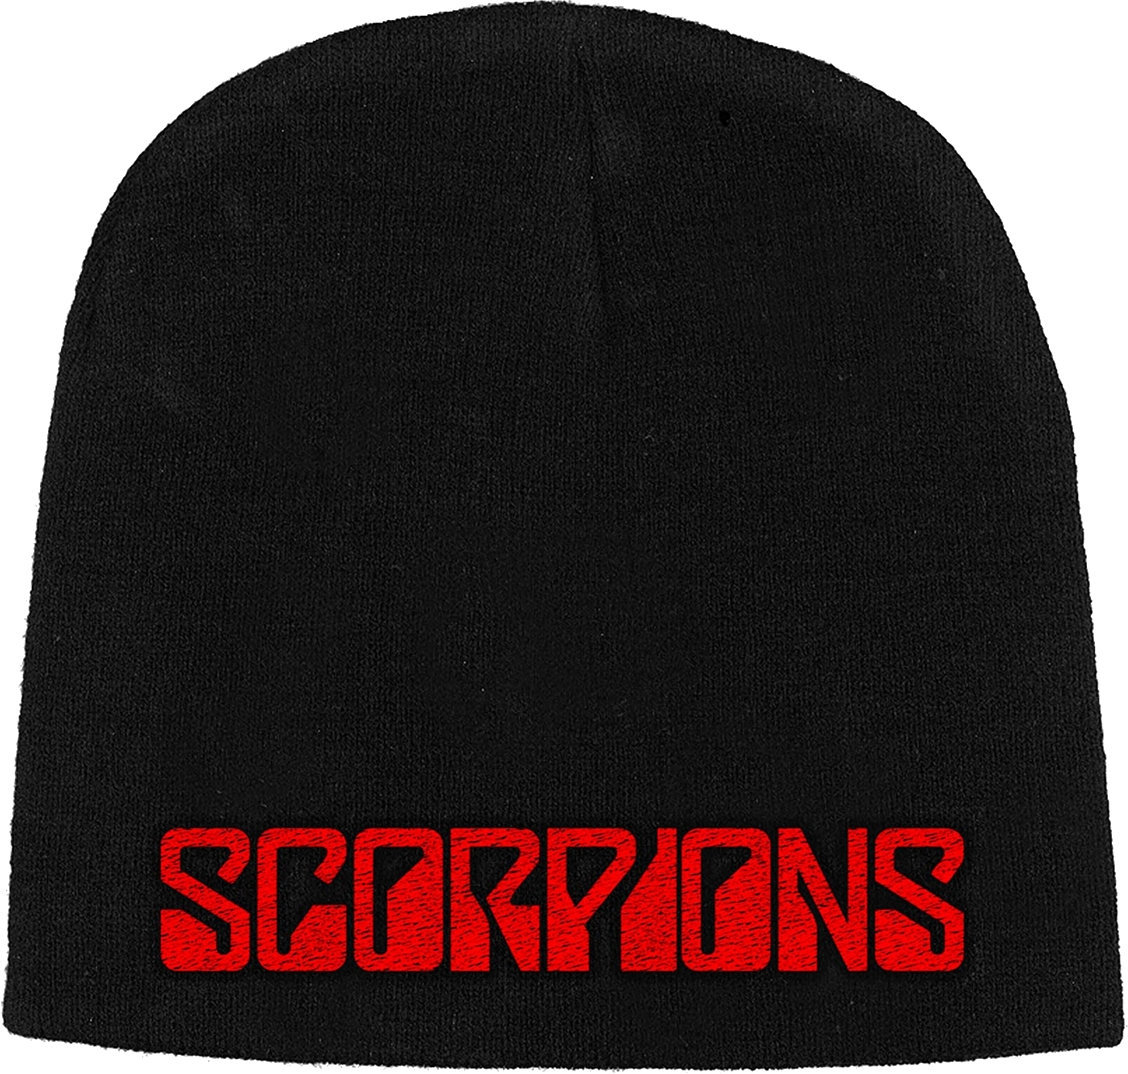 шапка Scorpions шапка Logo Черeн